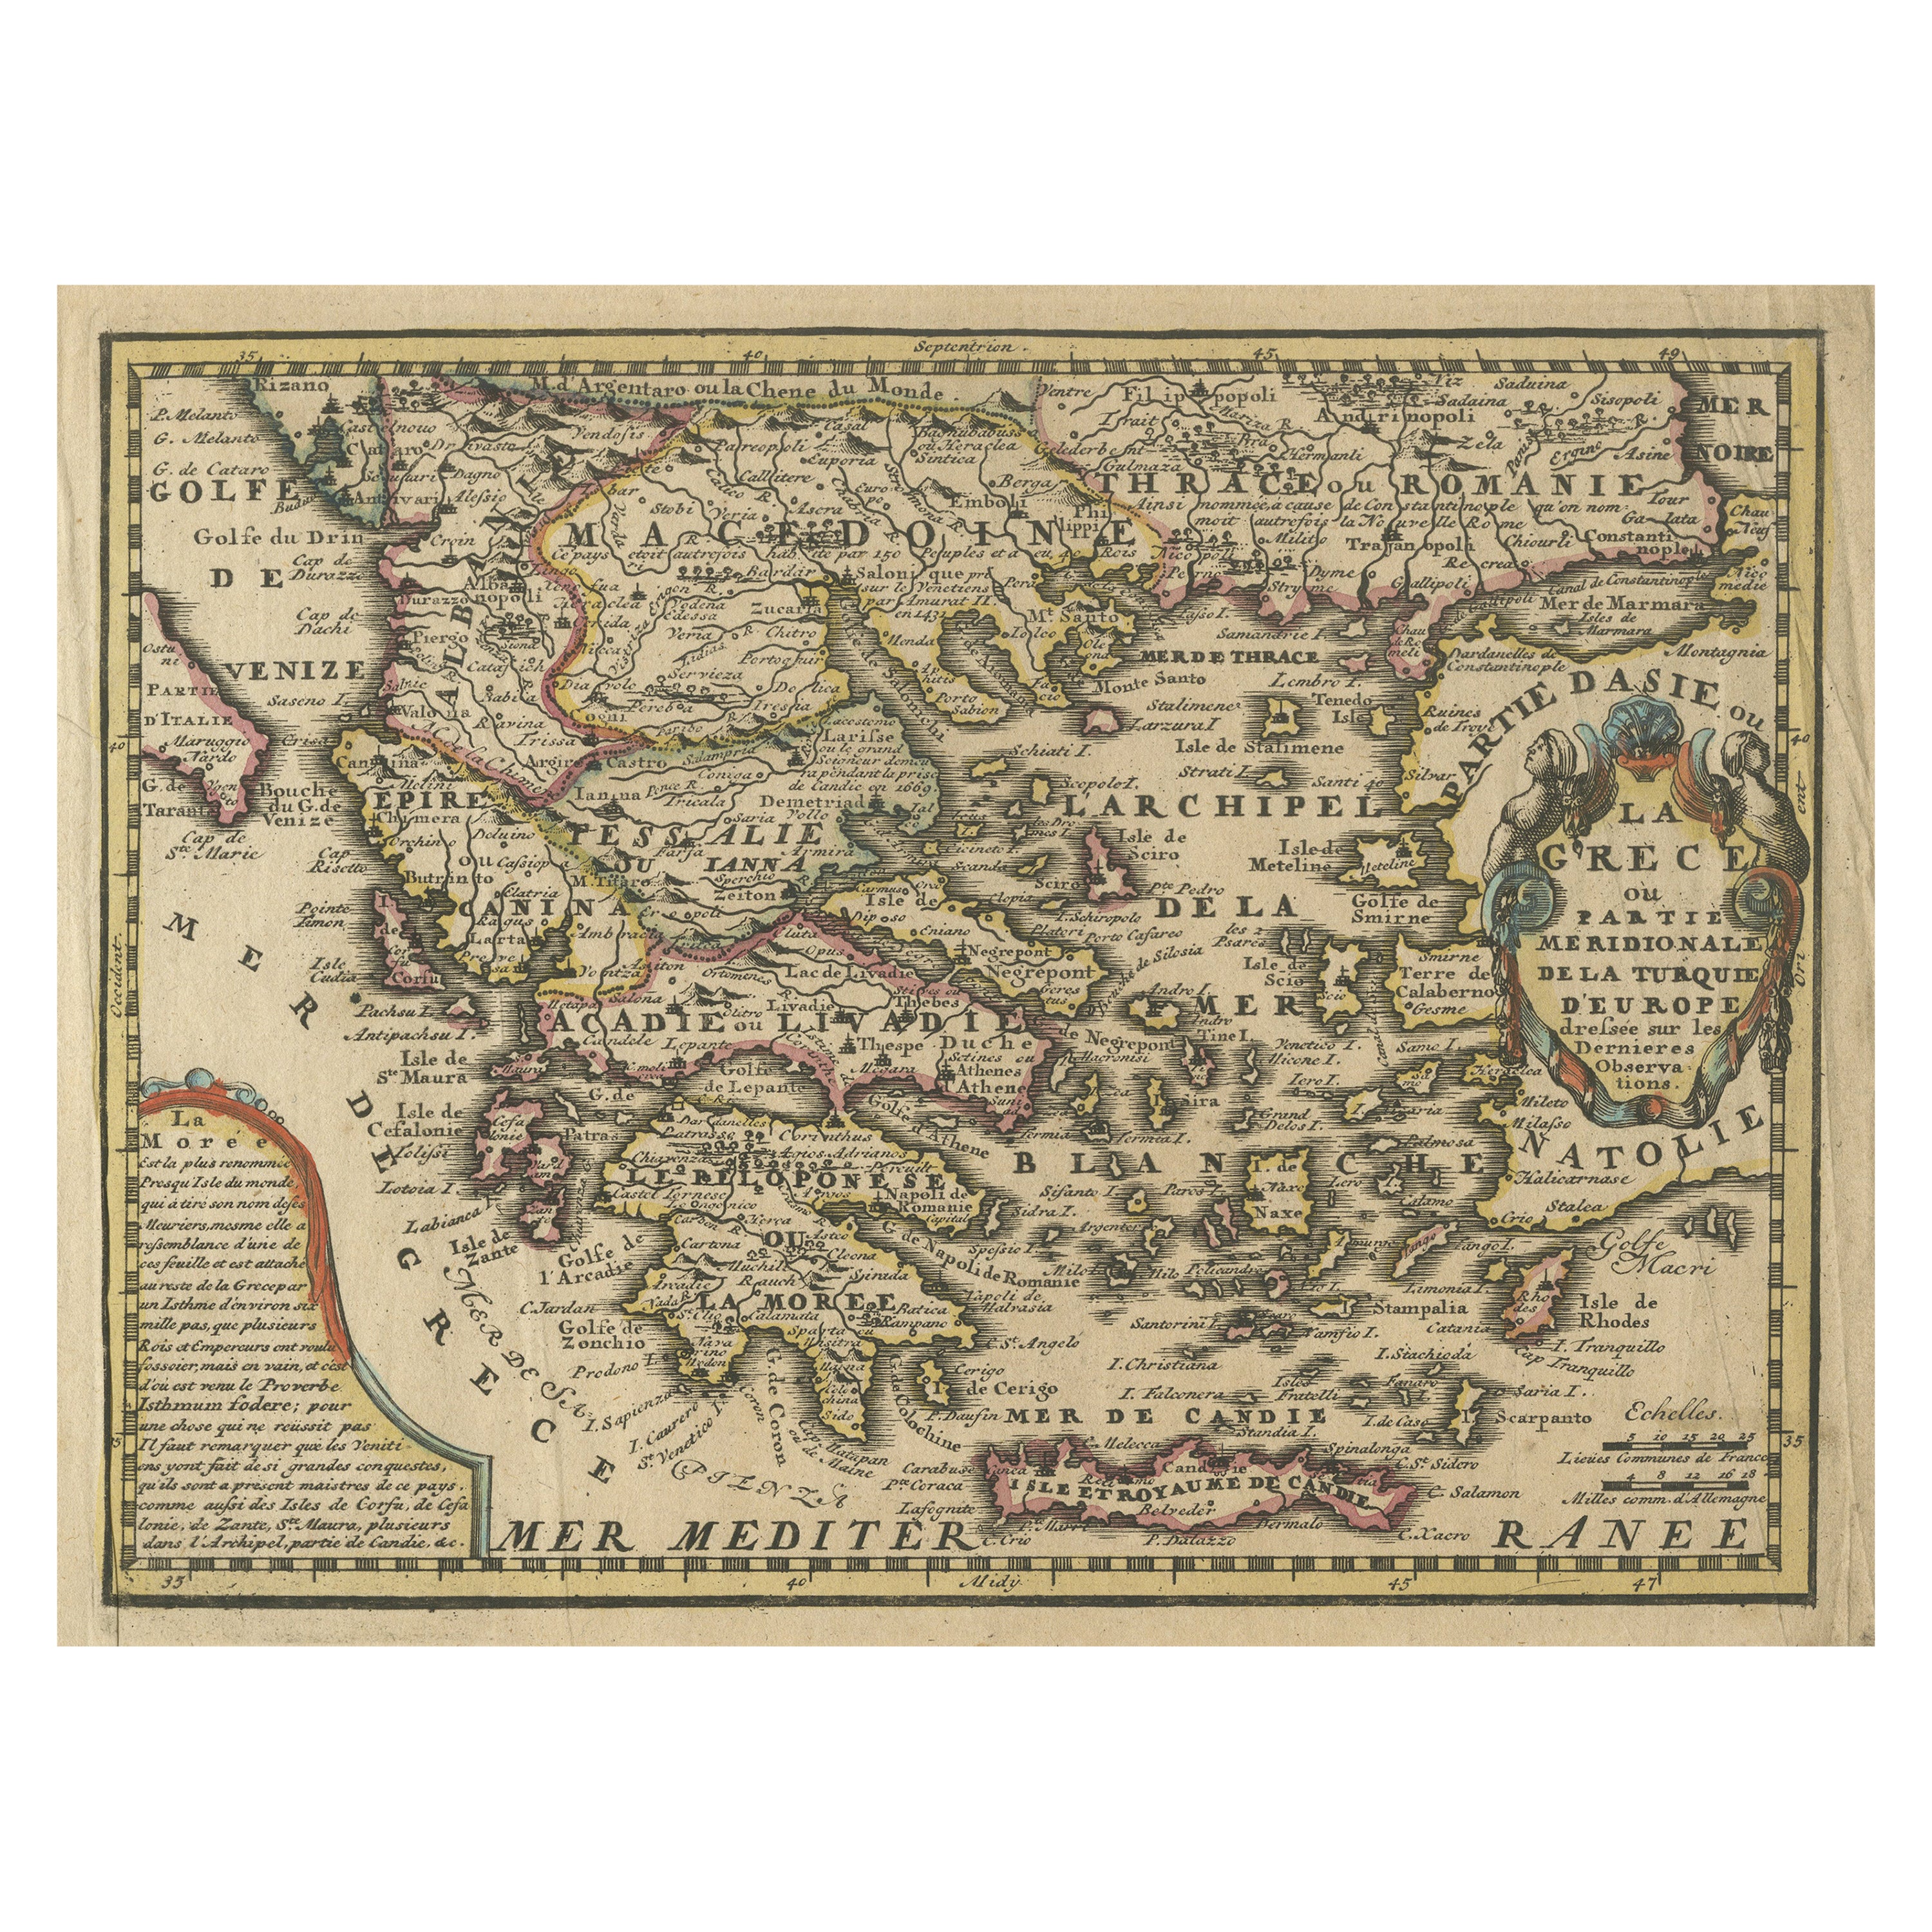 Carte ancienne de Grèce et d'une partie de la Turquie